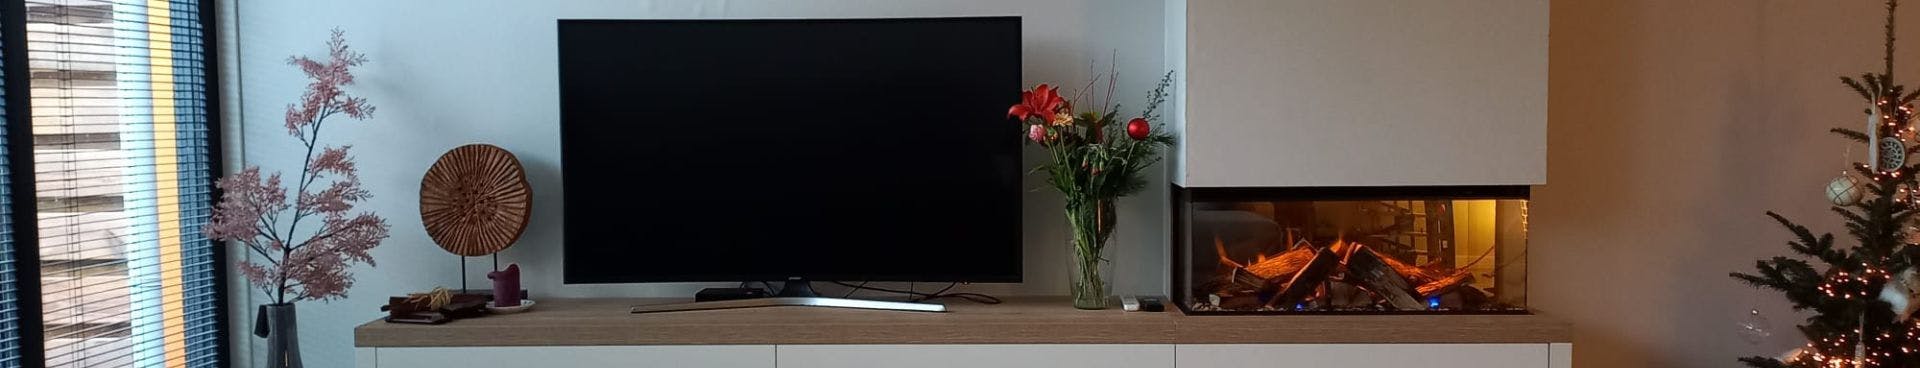 blozen Nauwgezet wekelijks Gerealiseerd project | Tv naast sfeerhaard in zwevend meubel